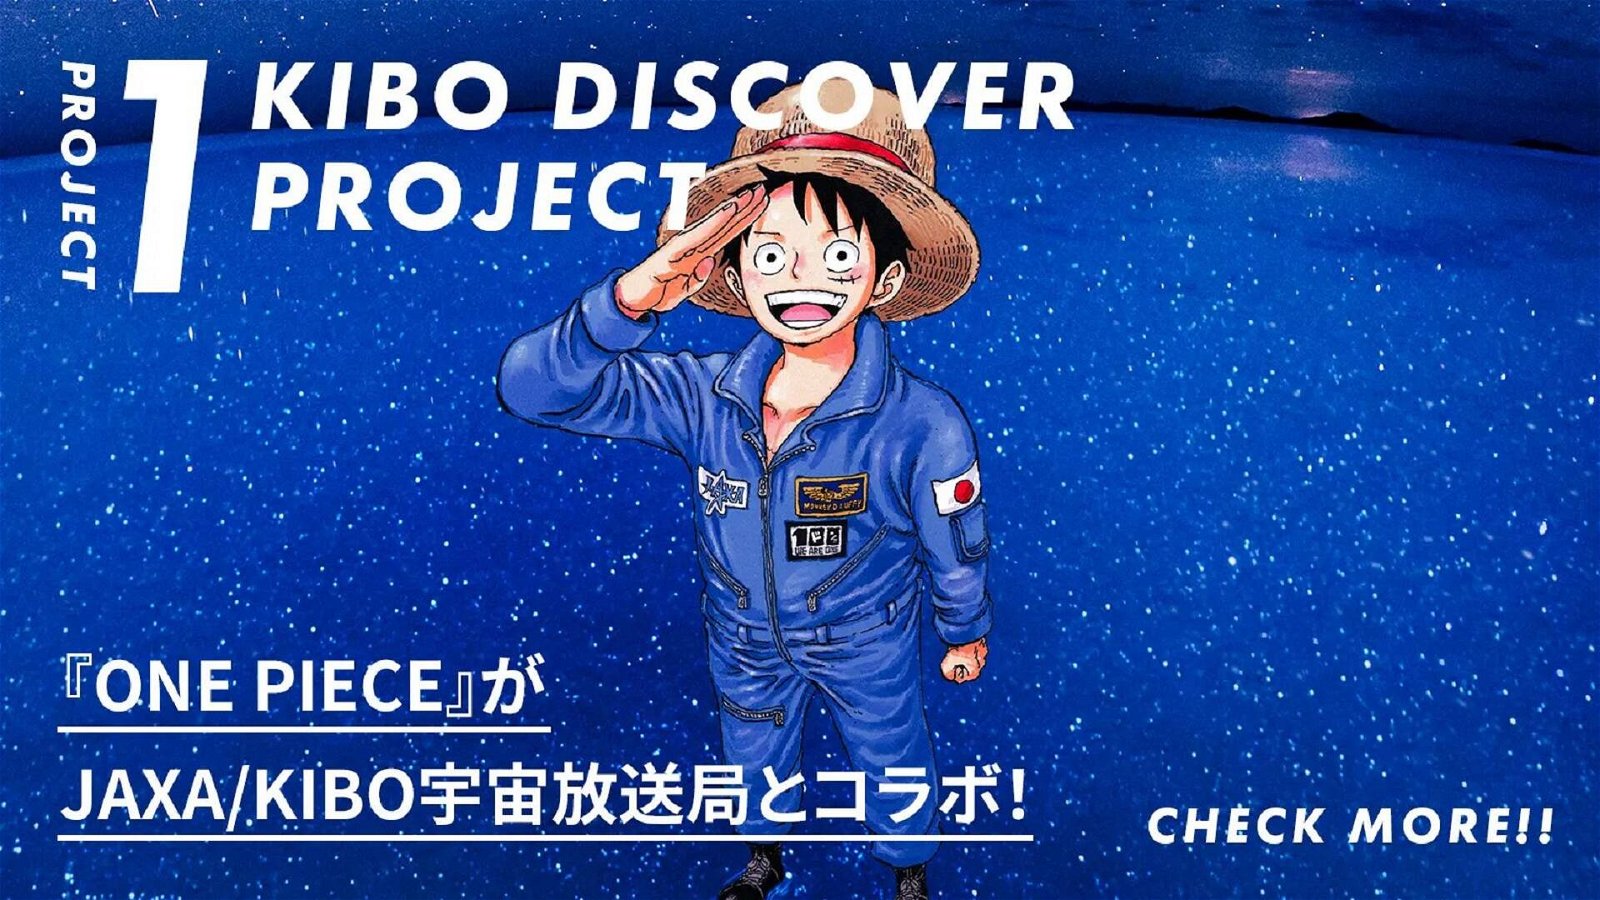 Immagine di One Piece nello spazio con l'agenzia spaziale giapponese